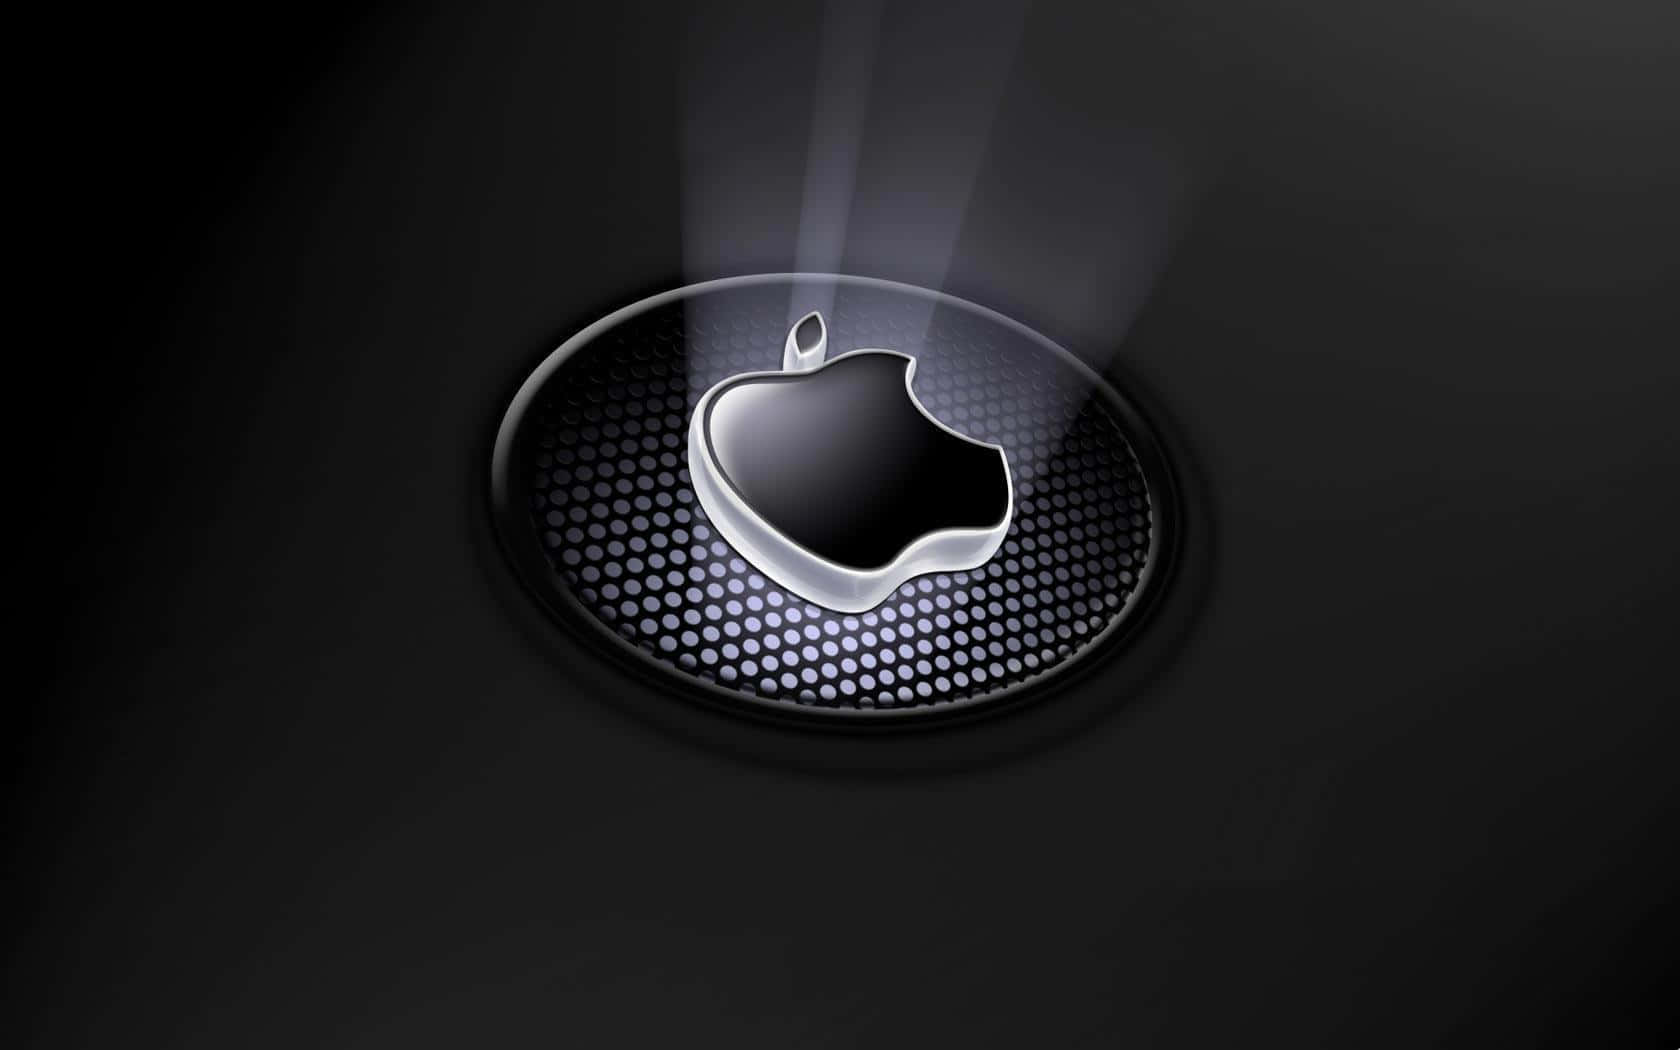 Mejorlogotipo De Apple En Blanco Y Negro En Arte 3d. Fondo de pantalla